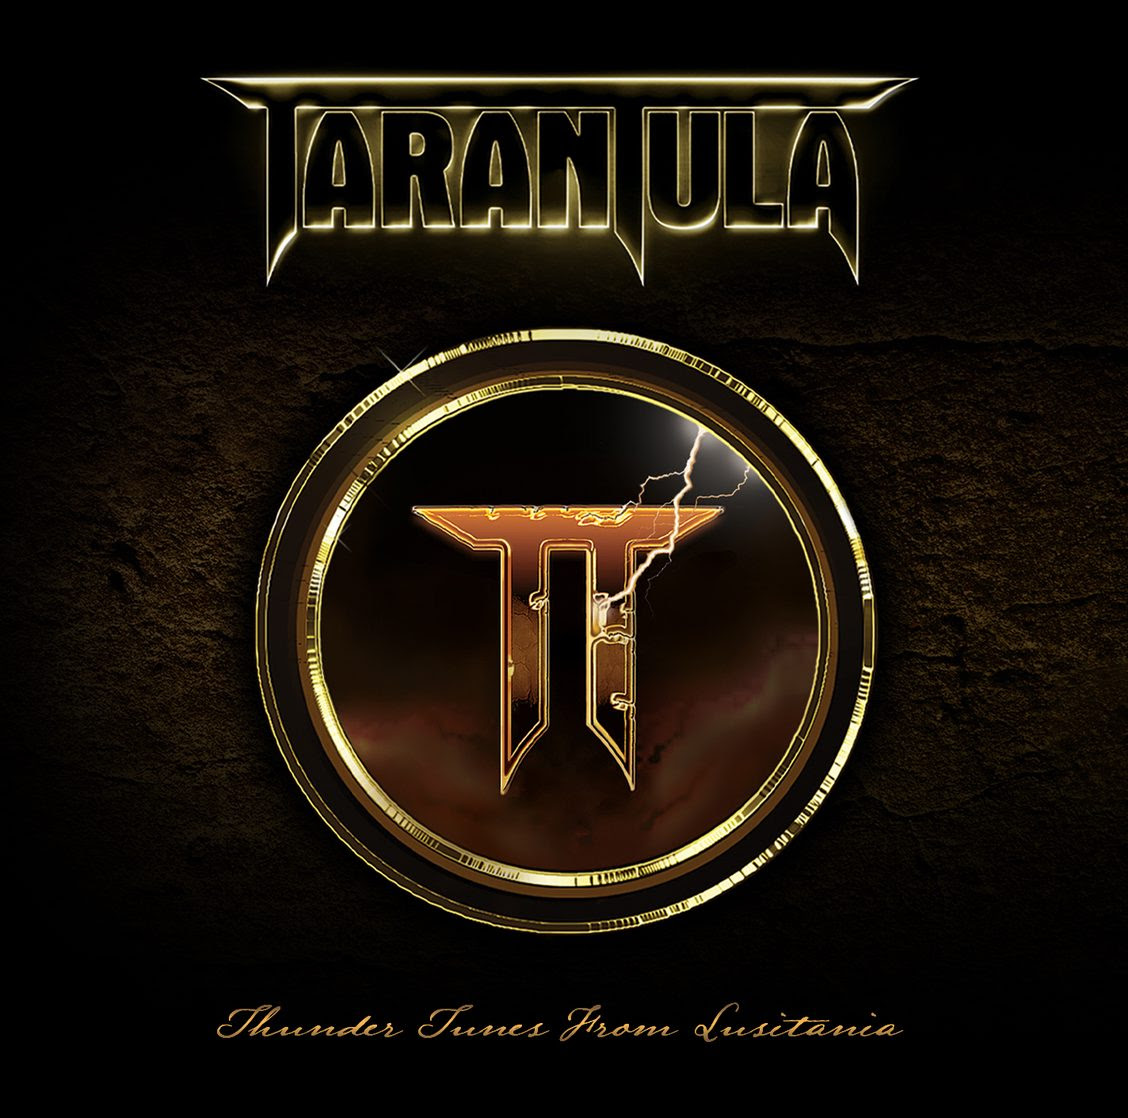 Tarantula album cover